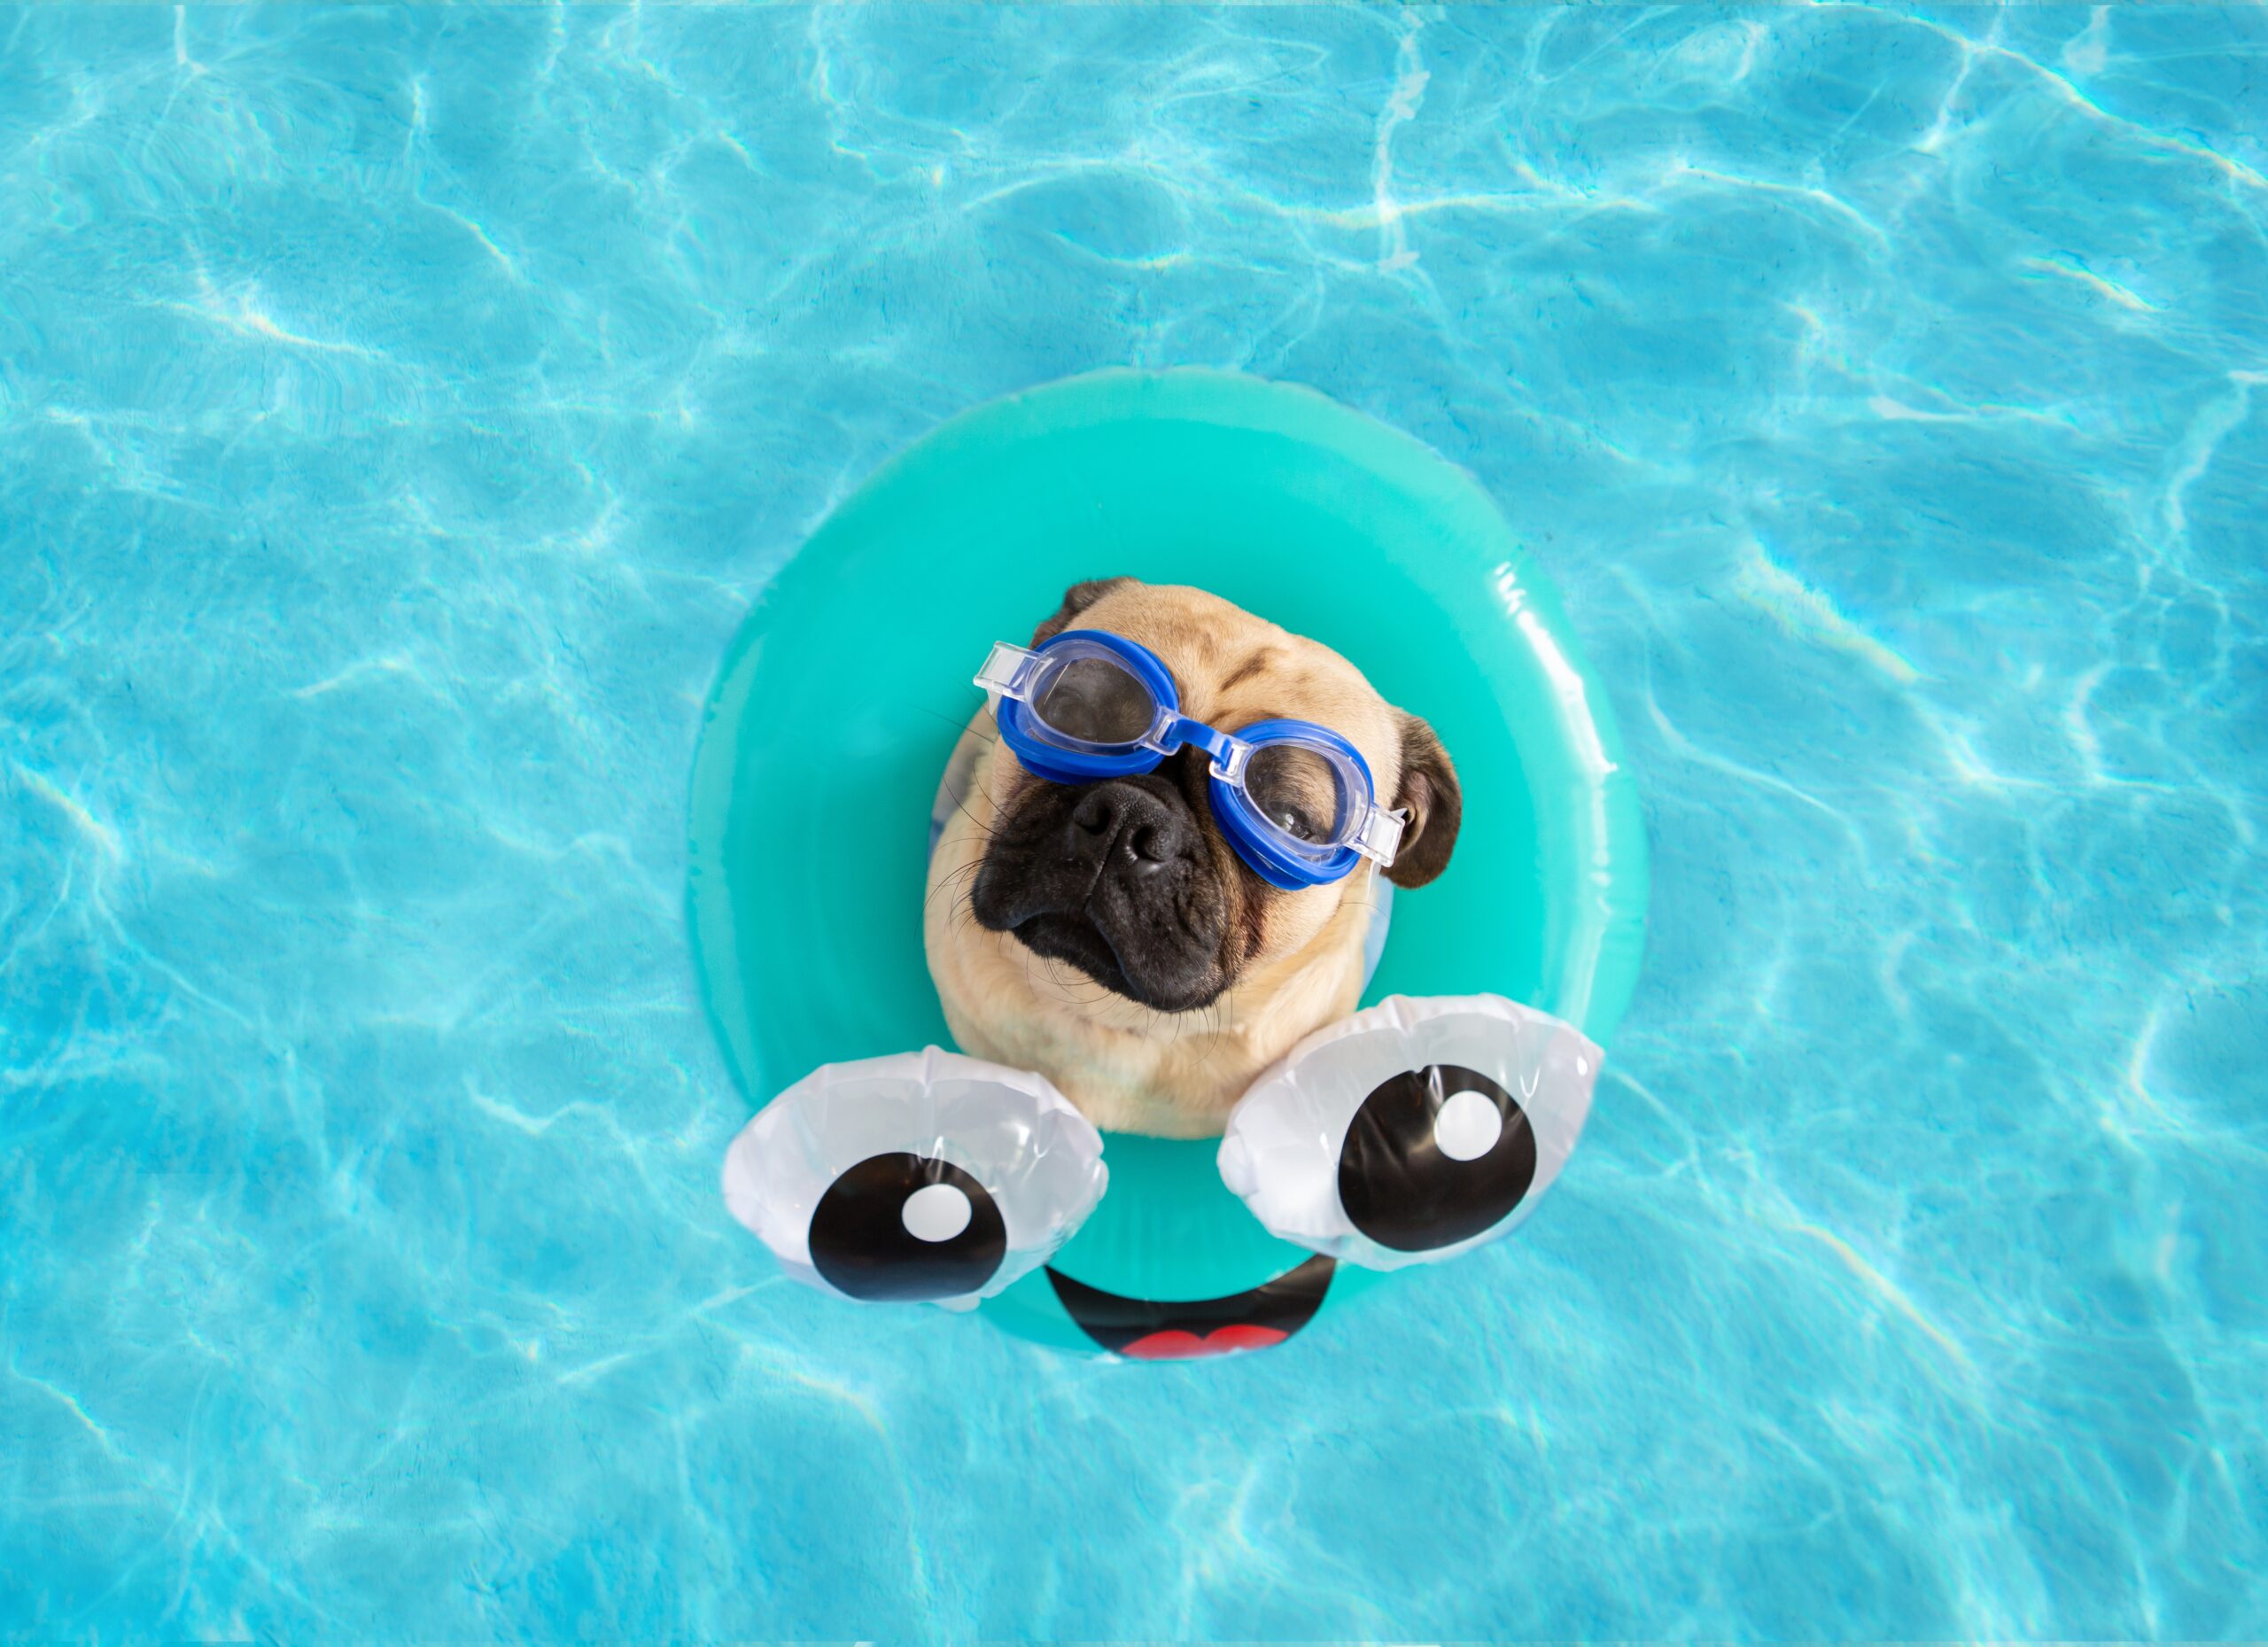 pug-floating-in-a-pool-2021-10-16-02-32-58-utc